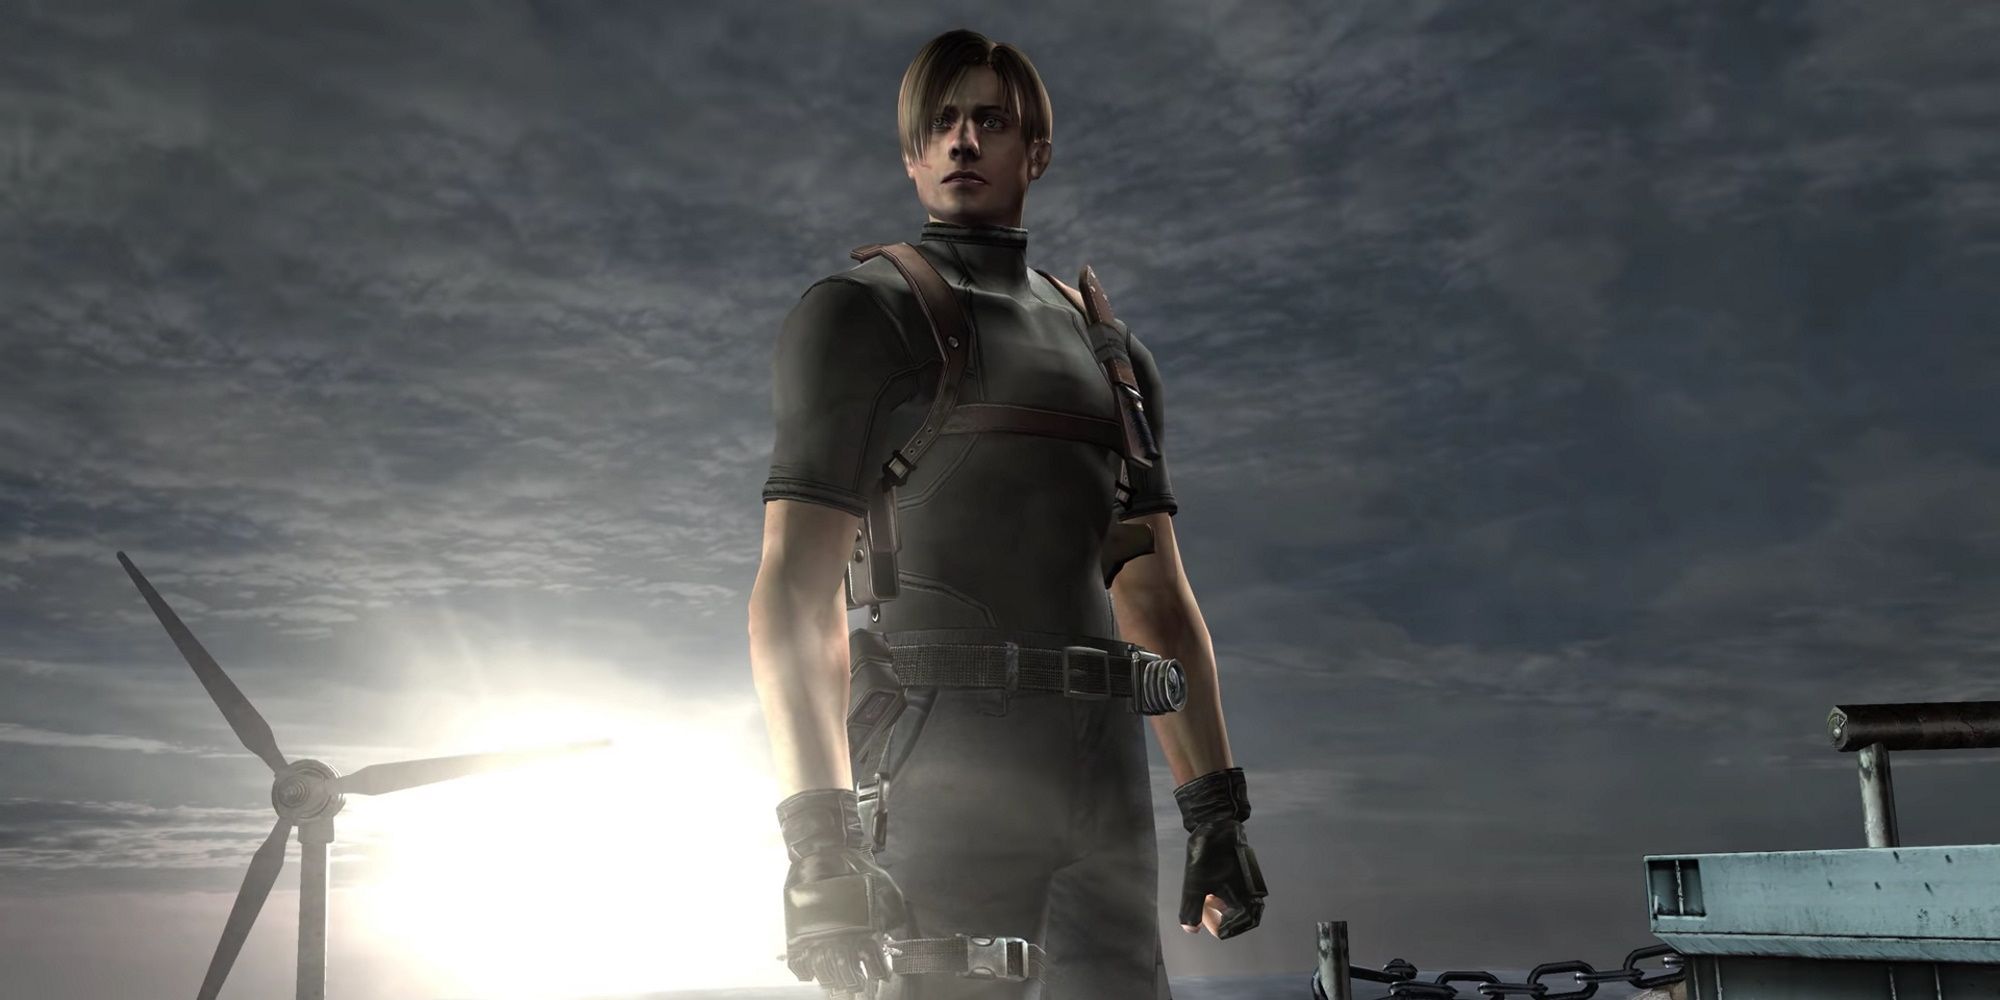 Never clearer. Leon Resident Evil 4 Robert Pattinson. Resident Evil 4 Remake Mercenaries.